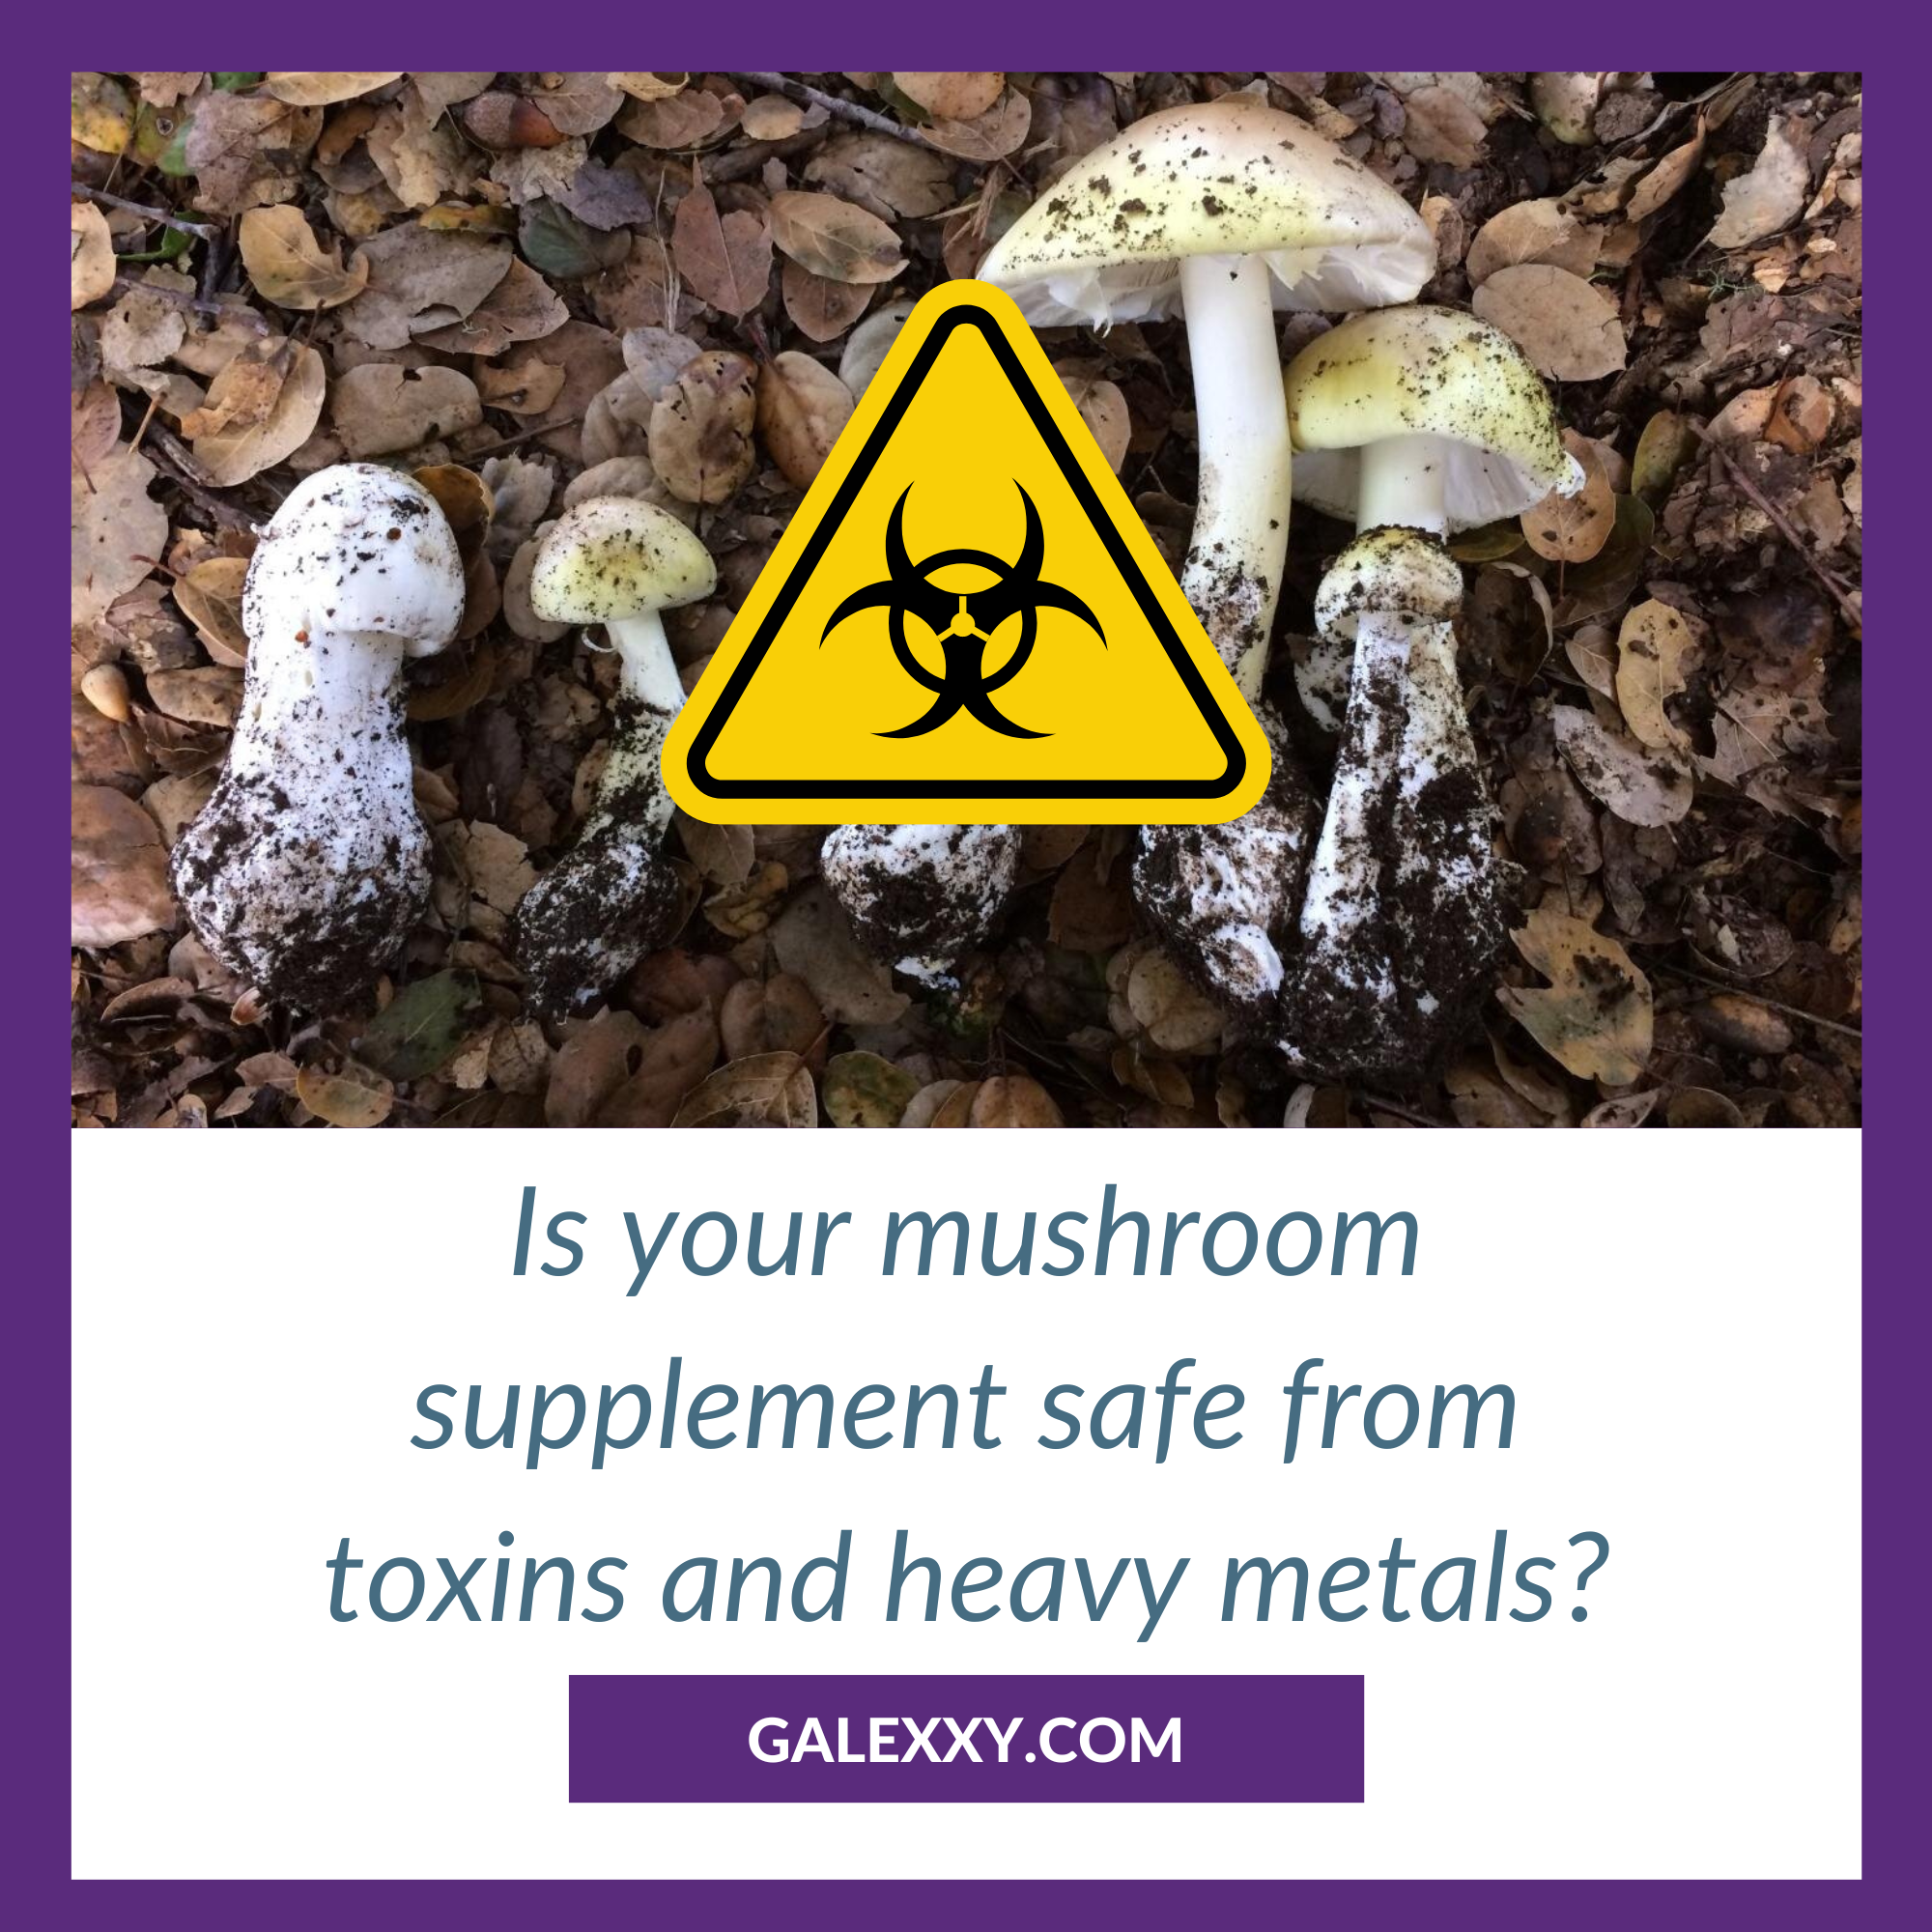 Ensure Safe Mushroom Supplements: Heavy Metals & Toxins